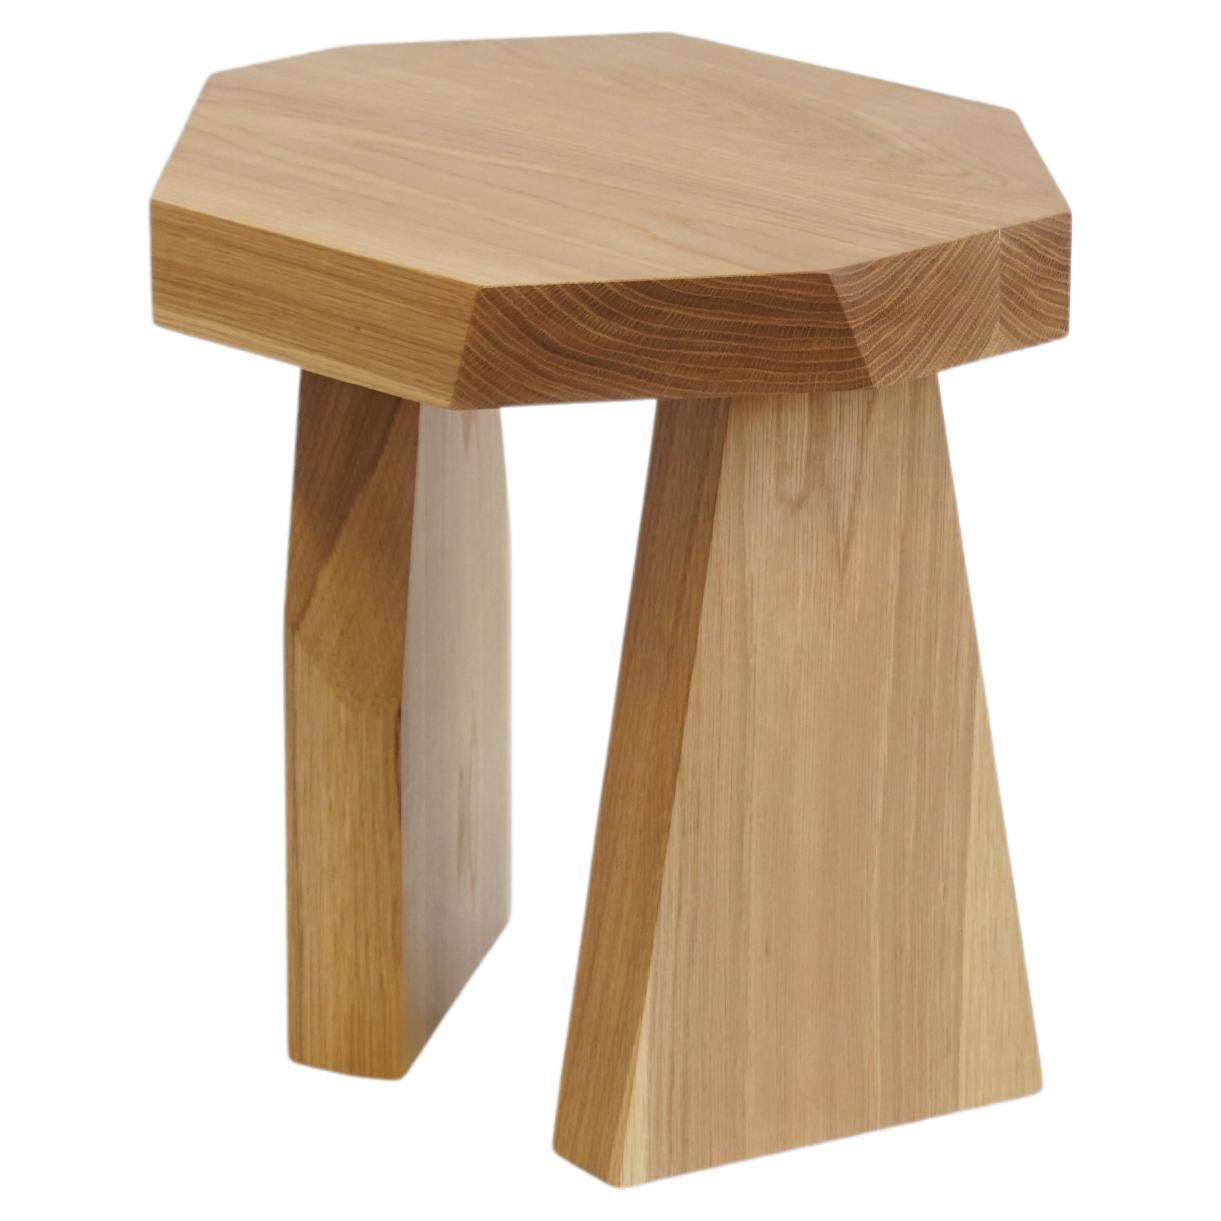 Geometric Modern Solid Wood White Oak Side Table by Last Workshop